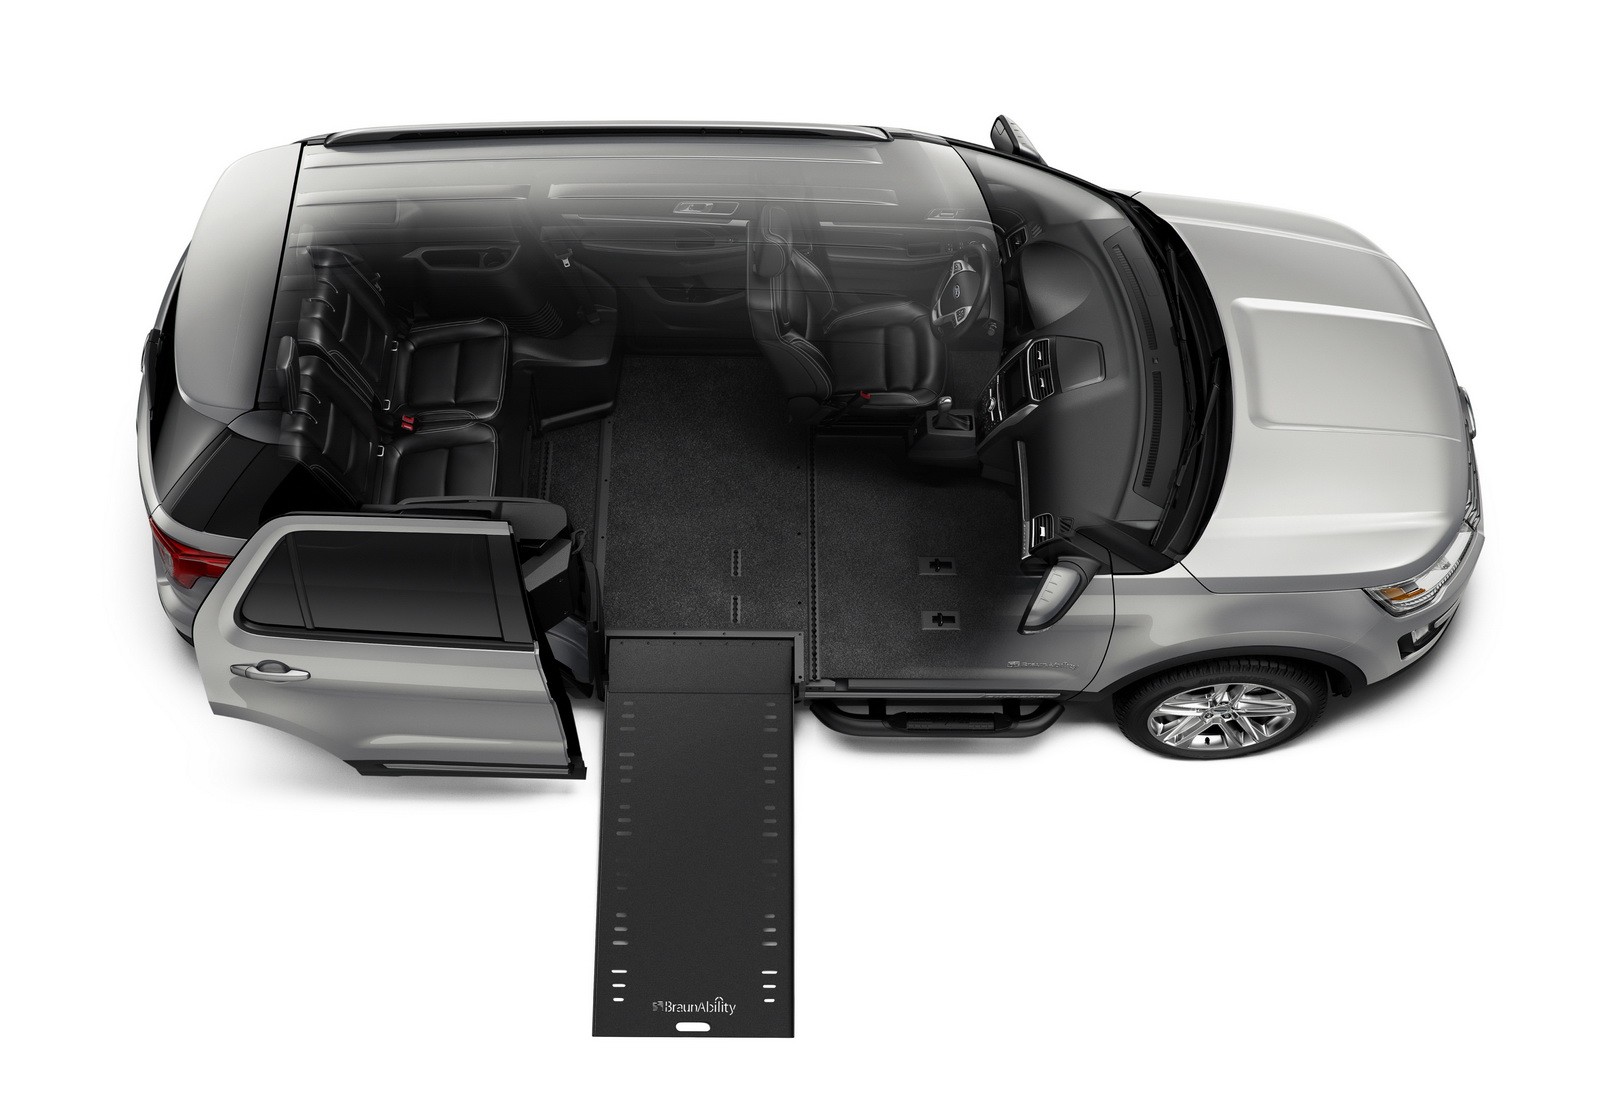 "فورد" تطلق سيارتها اكسبلورر 2016 الخاصة بذوي الاحتياجات الخاصة "صور ومواصفات" Ford 5